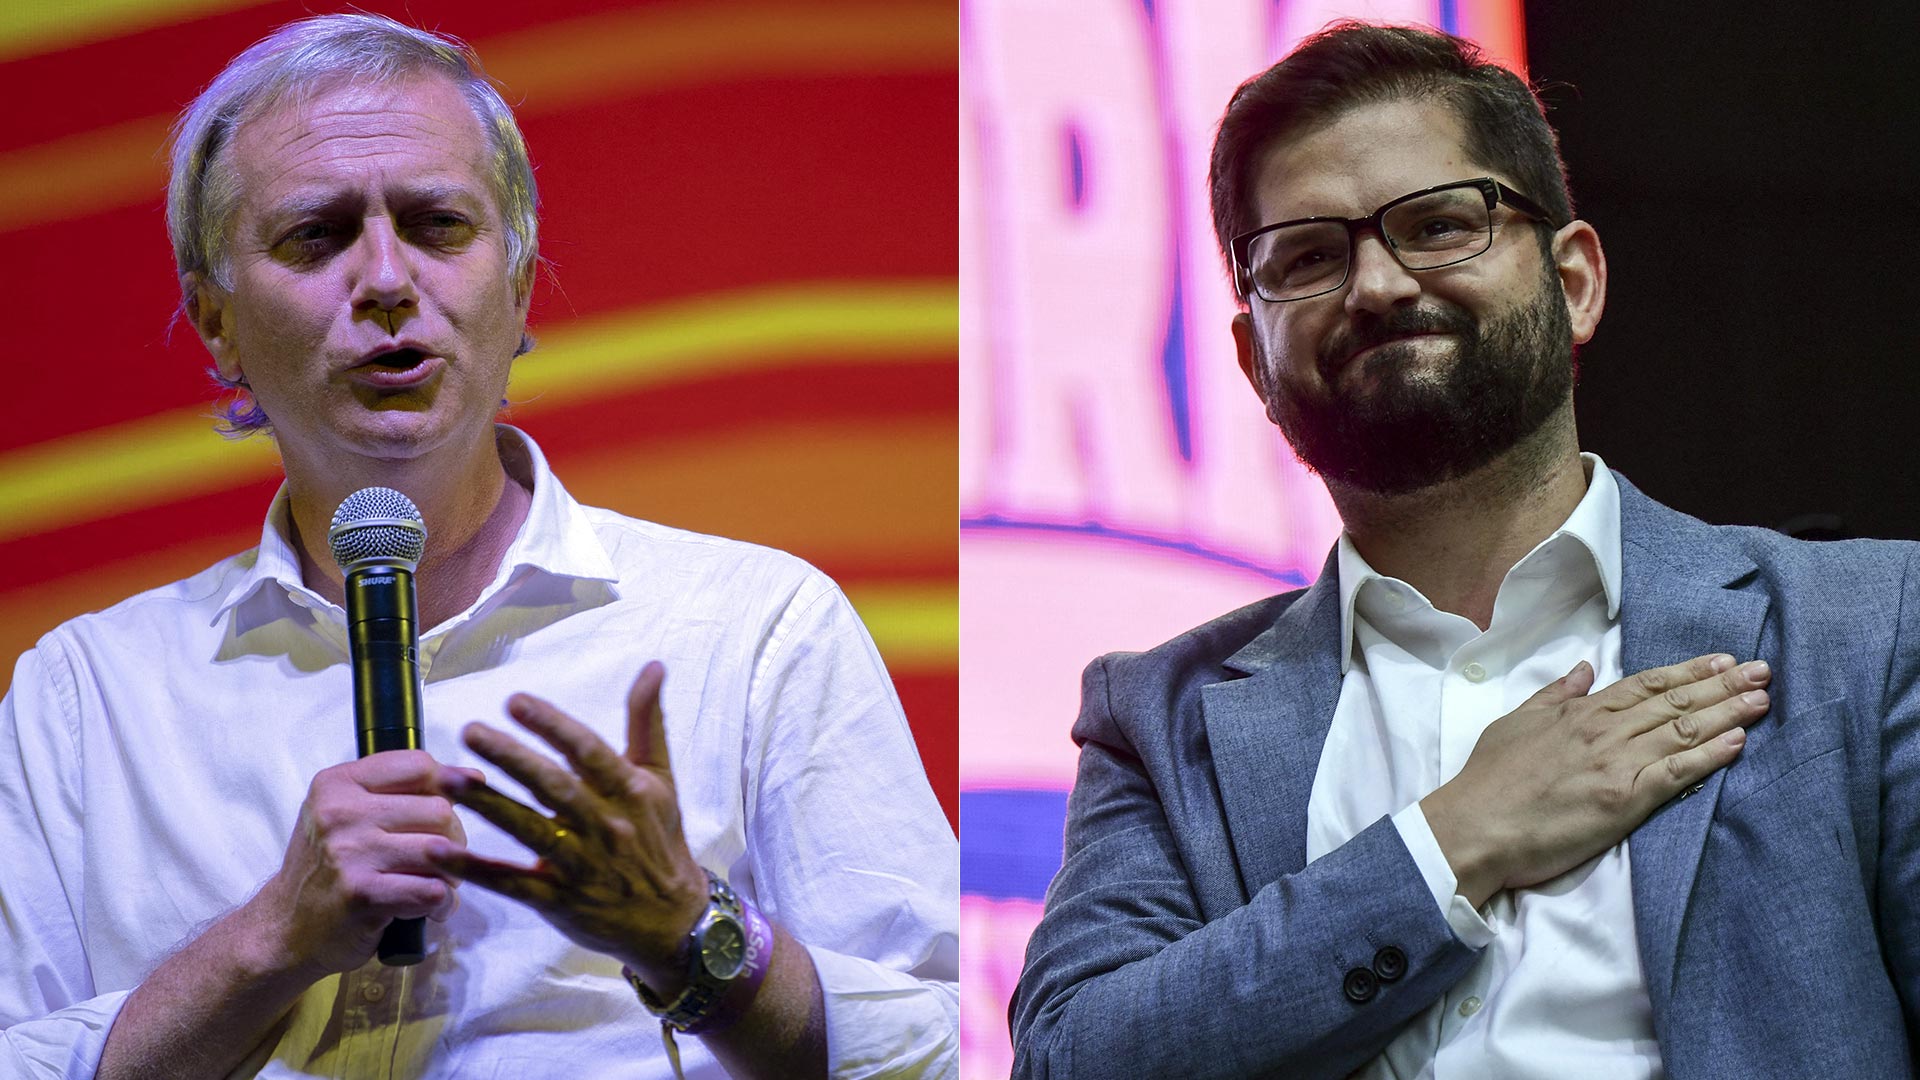 José Antonio Kast y Gabriel Boric, los candidatos de la derecha y la izquierda chilena en el ballotage de este domingo (AFP)